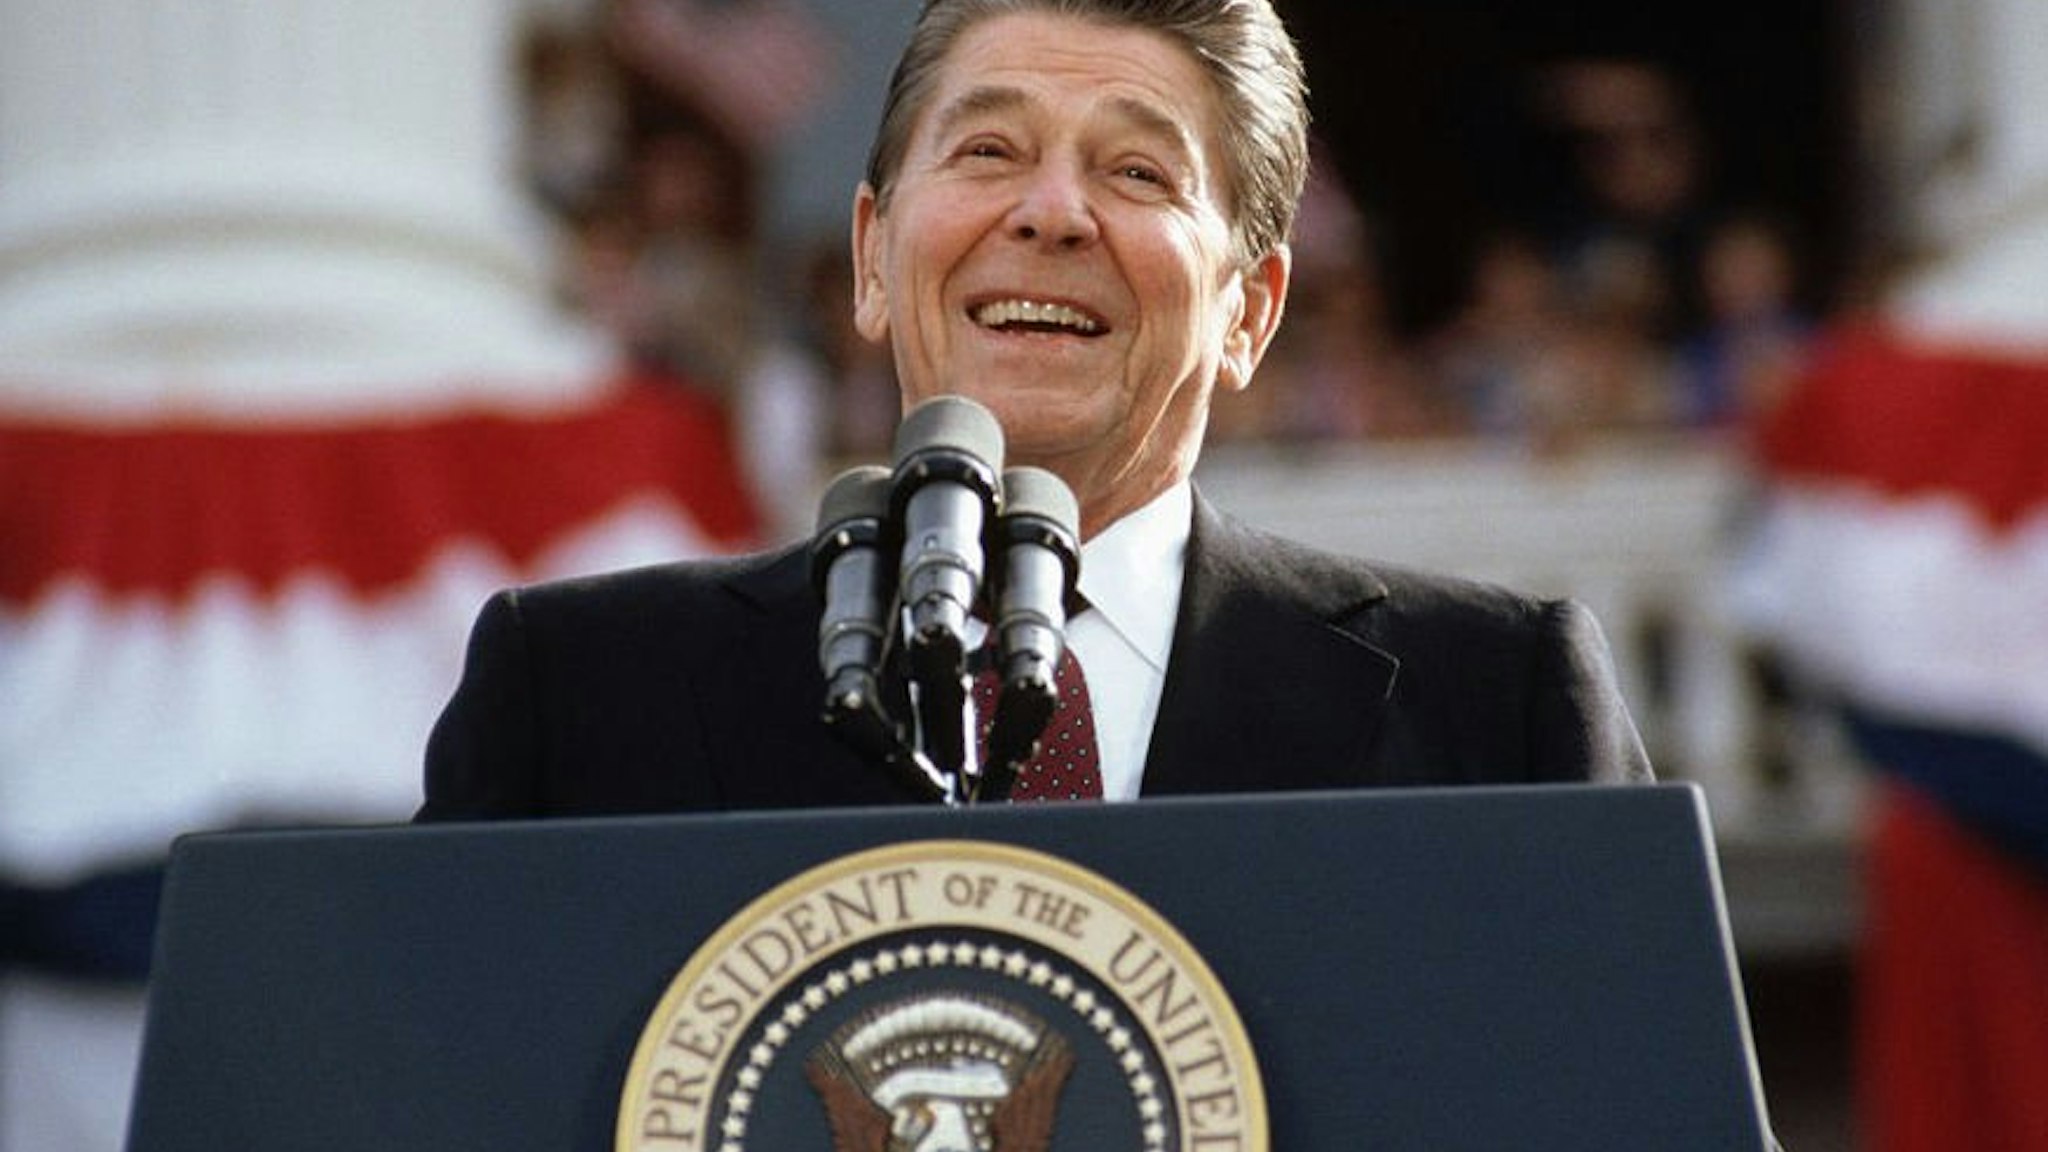 Ronald Reagan Giving A Speech